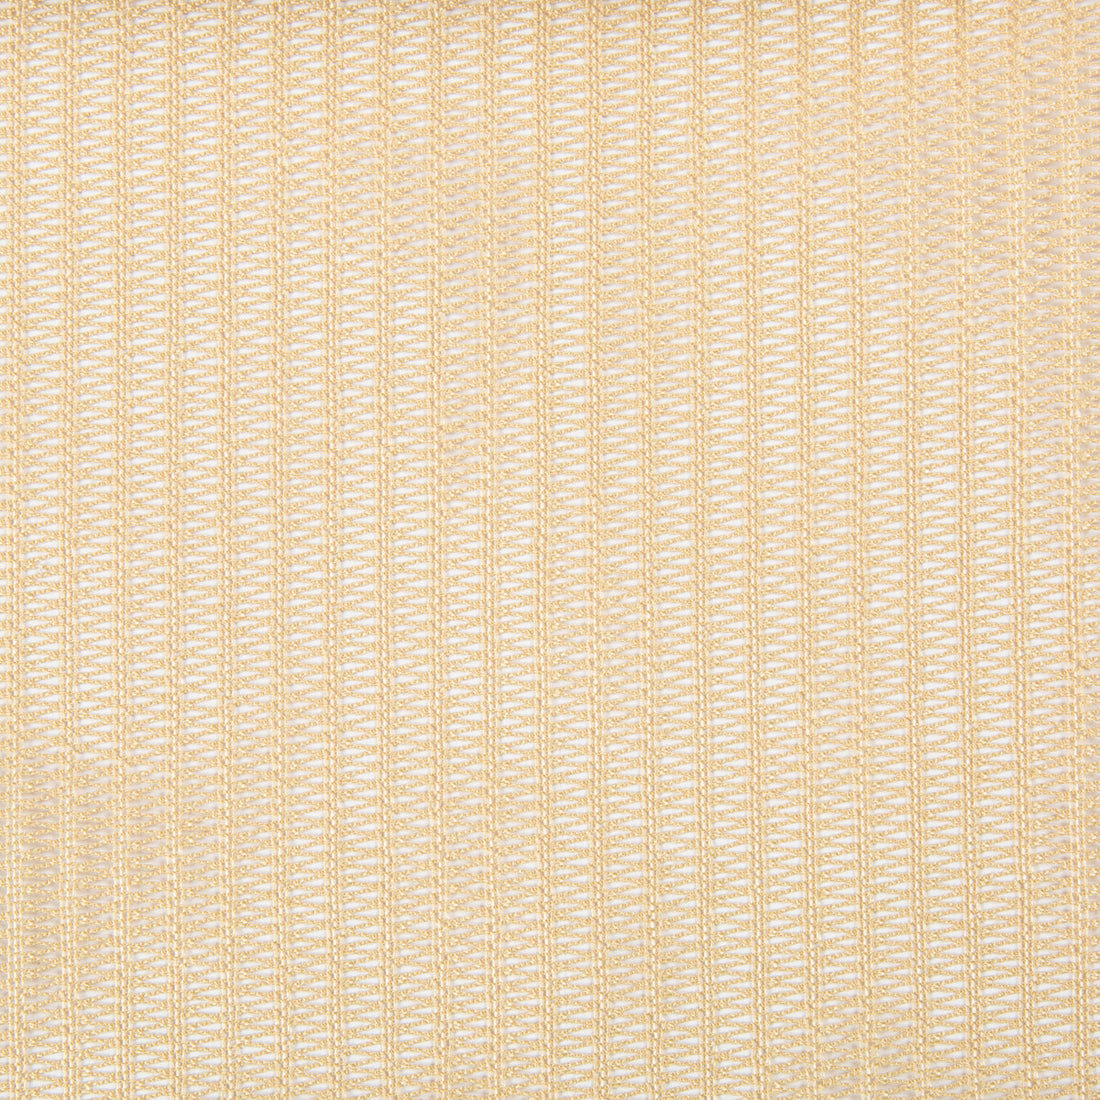 Kravet Basics fabric in 4297-16 color - pattern 4297.16.0 - by Kravet Basics